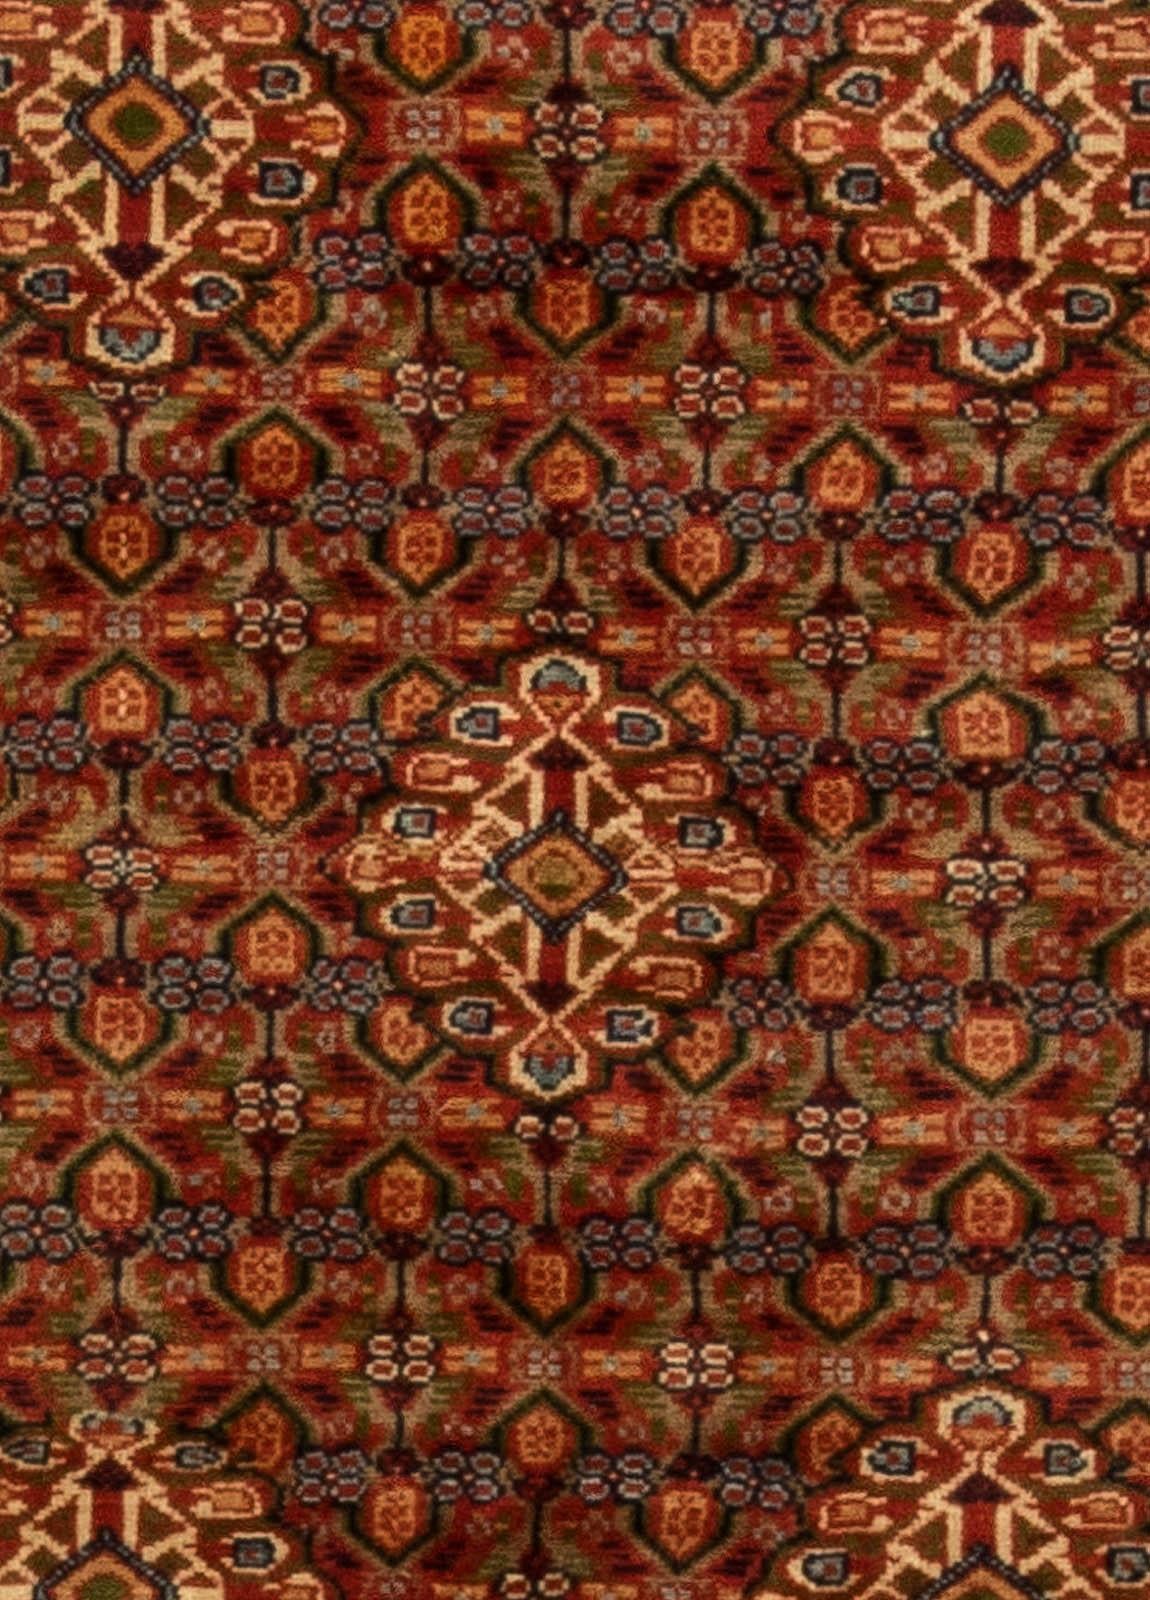 Midcentury Persian Sultanabad wool rug by Doris Leslie Blau
Size: 6'5